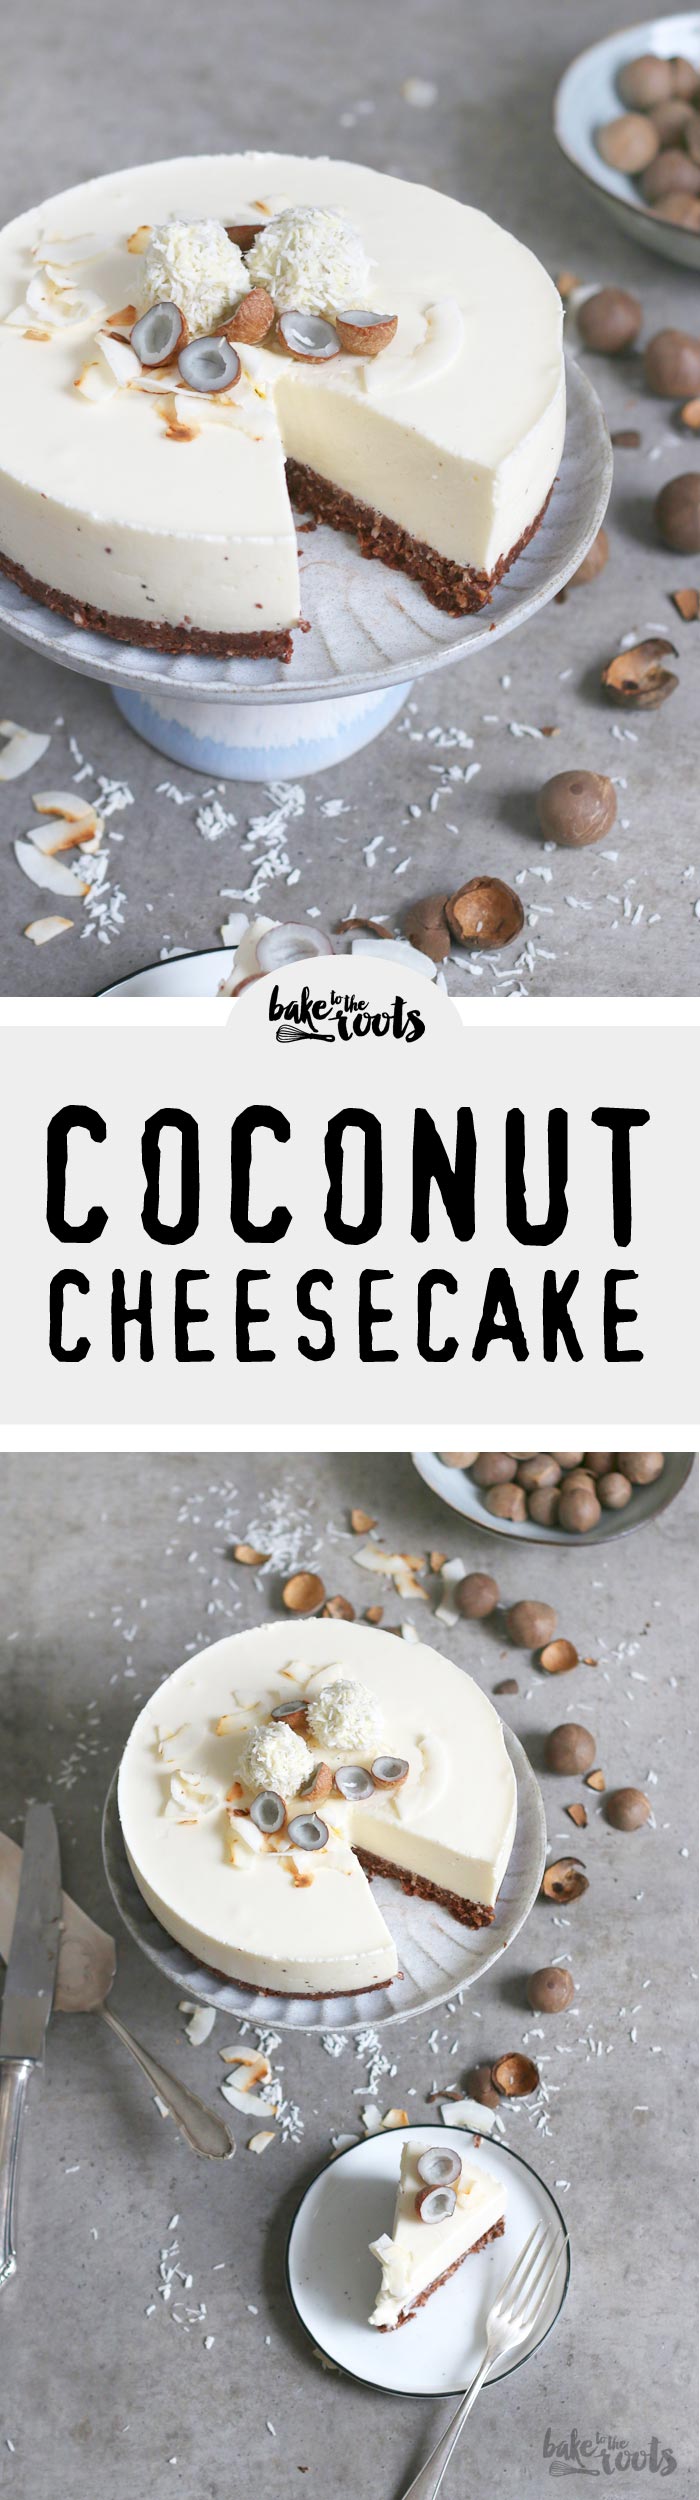 Leckerer No-Bake Kokosnuss Cheesecake mit Batida de Coco – erfrischend und cremig | Bake to the roots